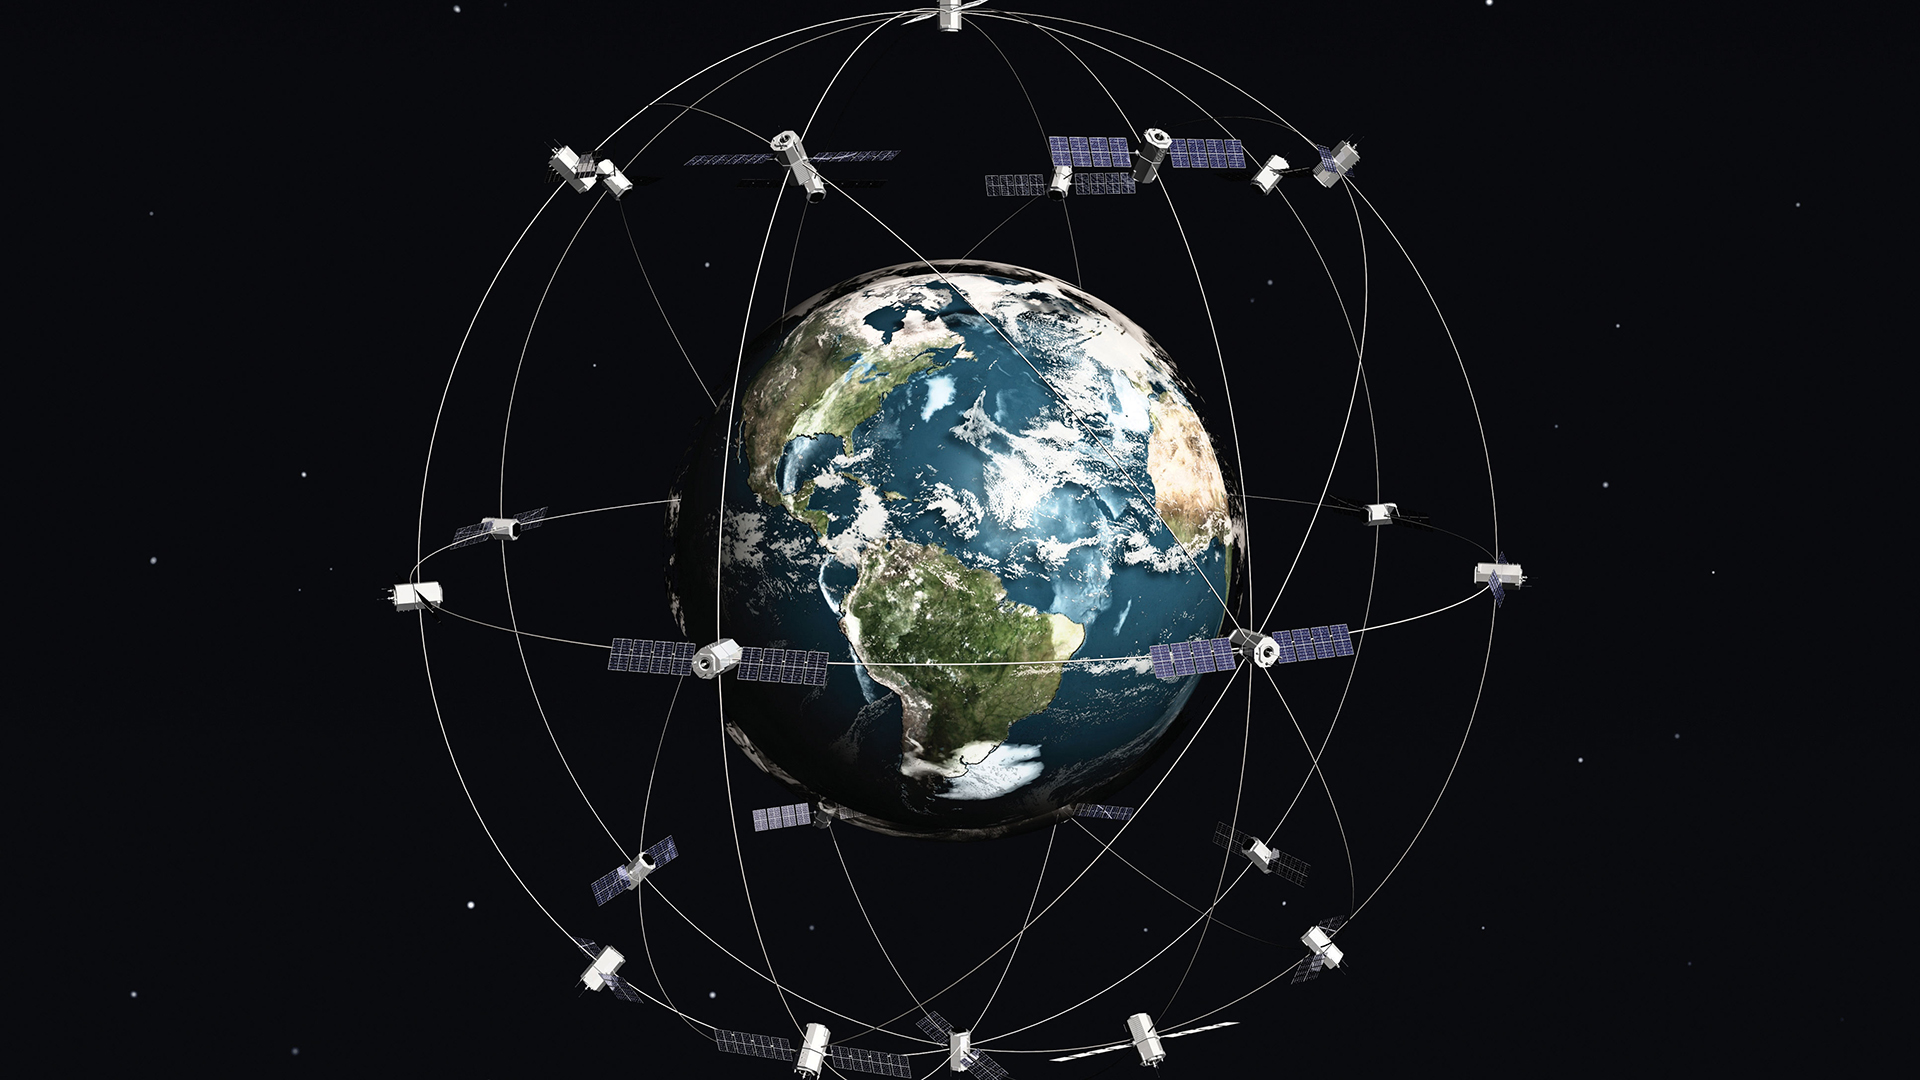 Musk consiguió la aprobación de Starlink, un ambicioso plan de internet satelital que lanzó en 2019, probó (en beta) en 2020 y quiere tener funcionando en el mundo entero en 2021. Y, en el futuro, en Marte.